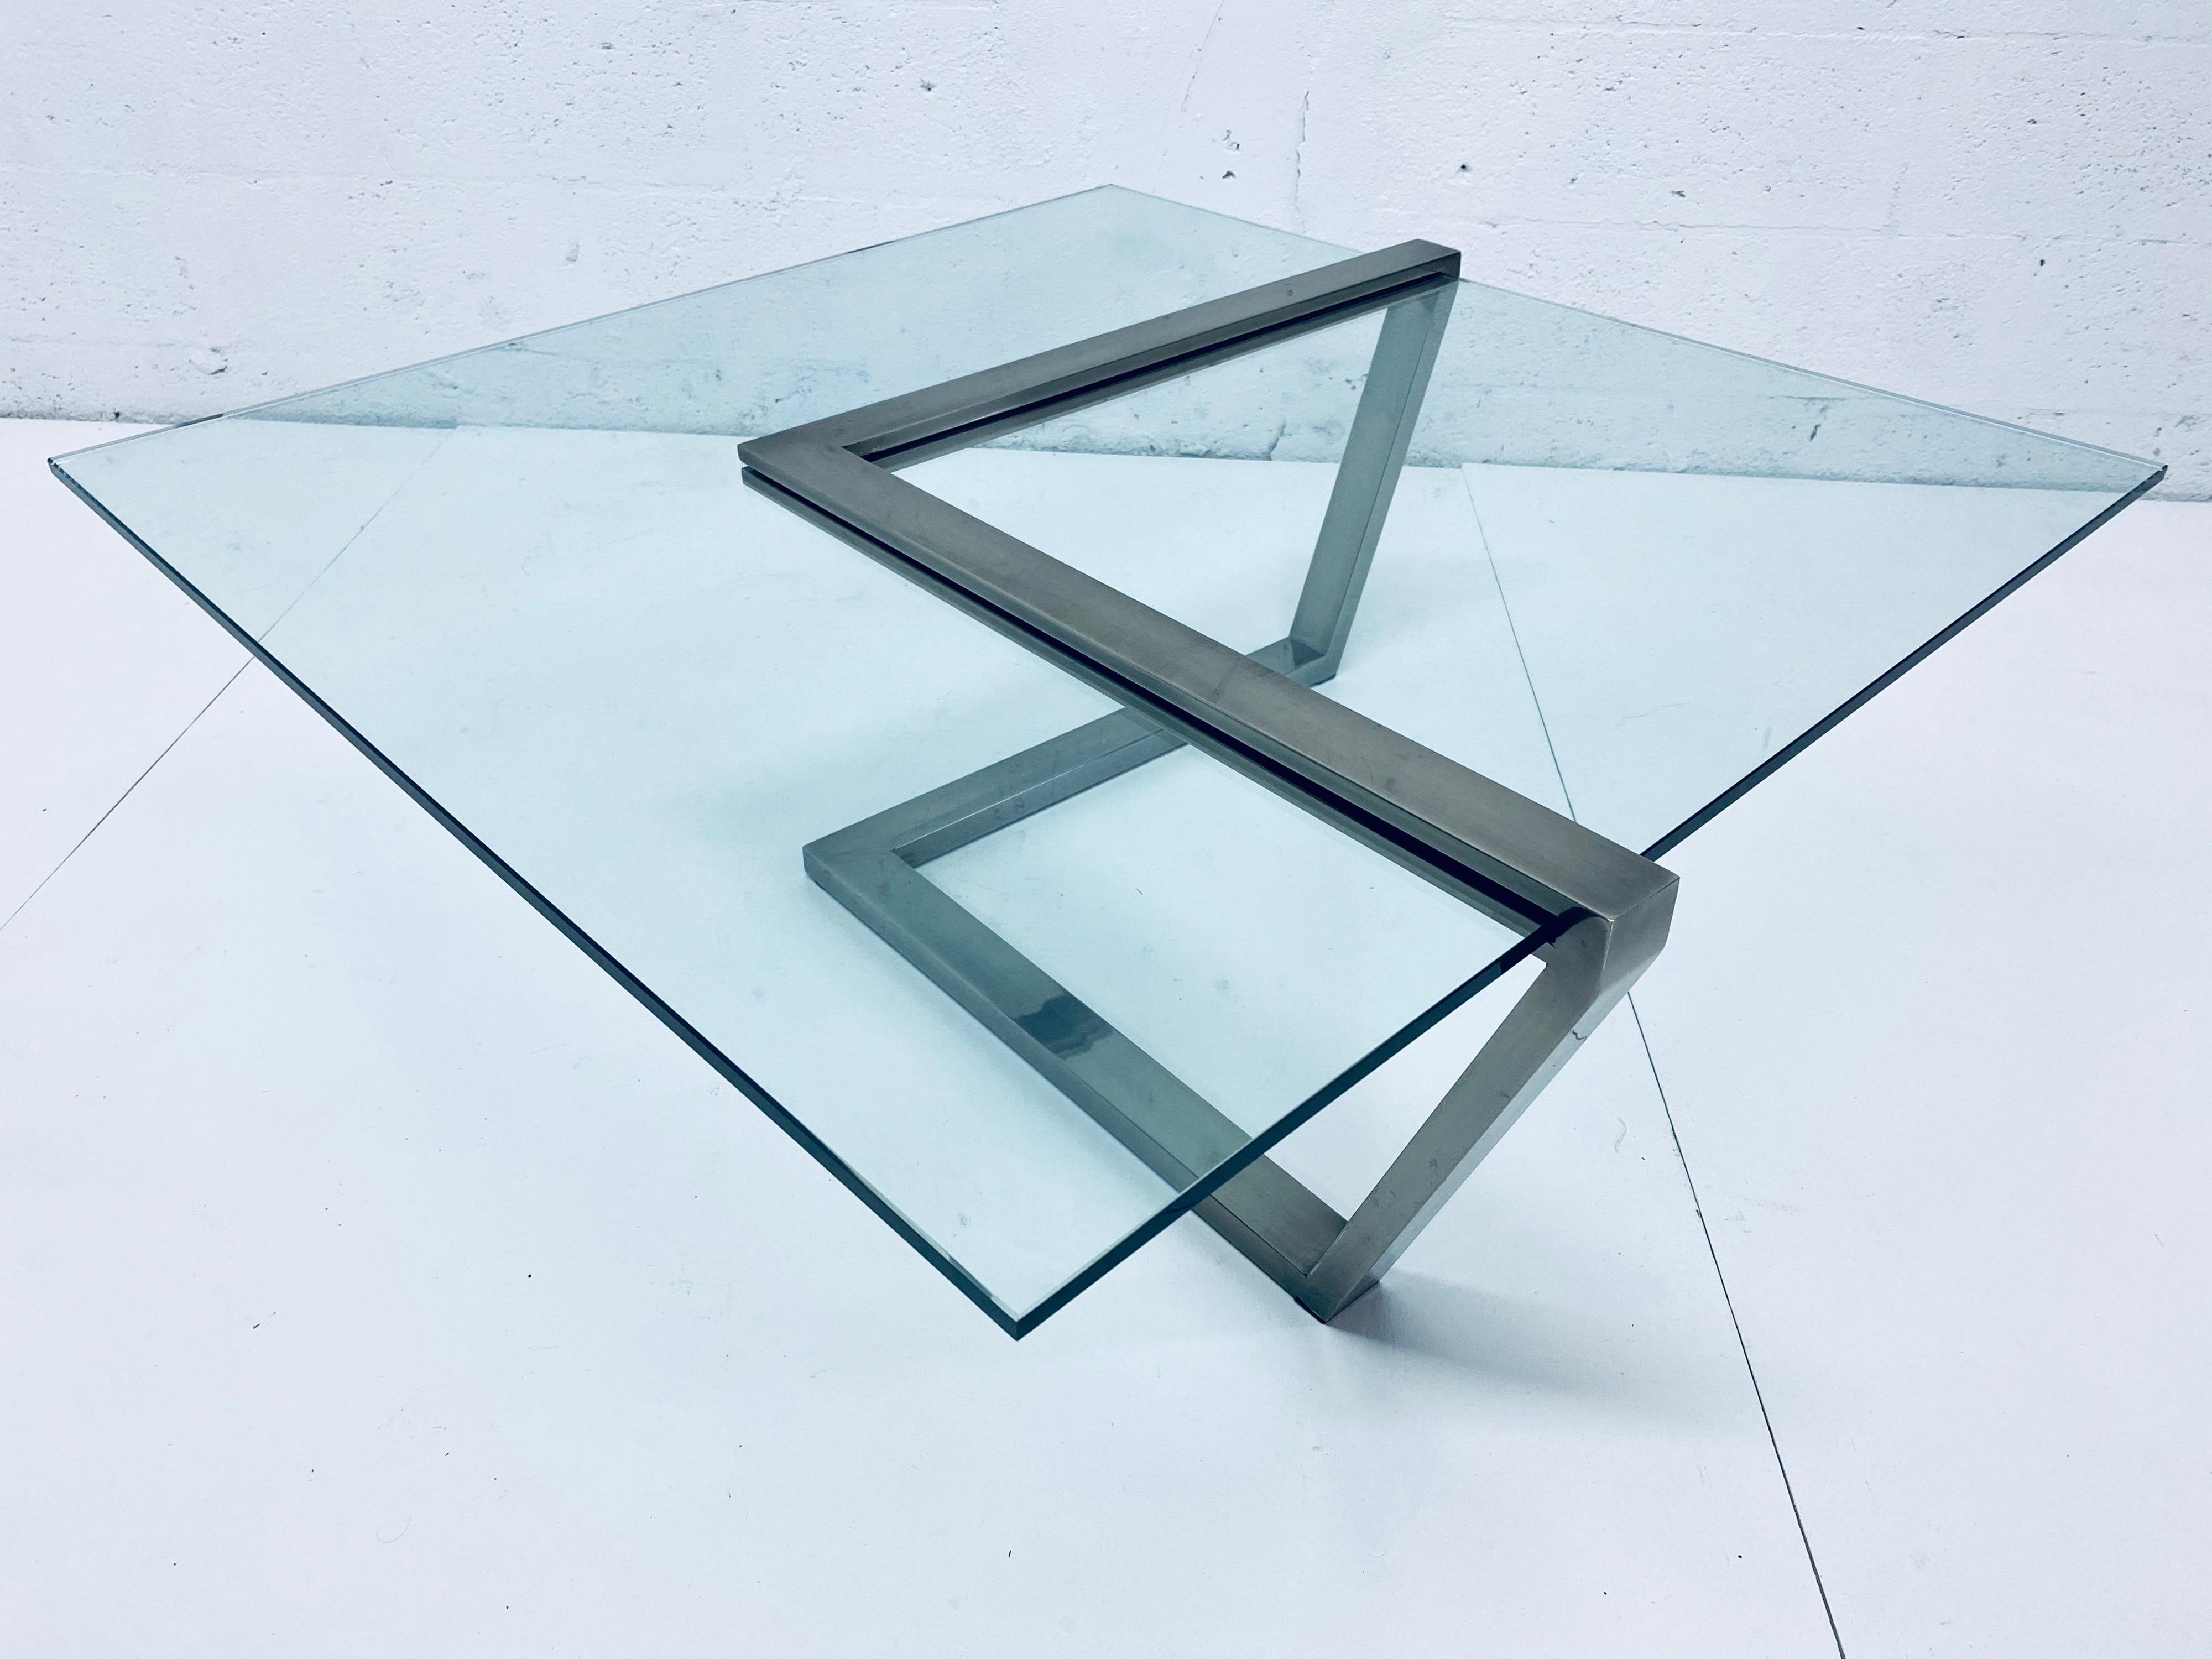 Table basse en verre en porte-à-faux et chrome brossé de Design Institute of America, DIA. Signé.

Dimensions du verre : 39-3/4